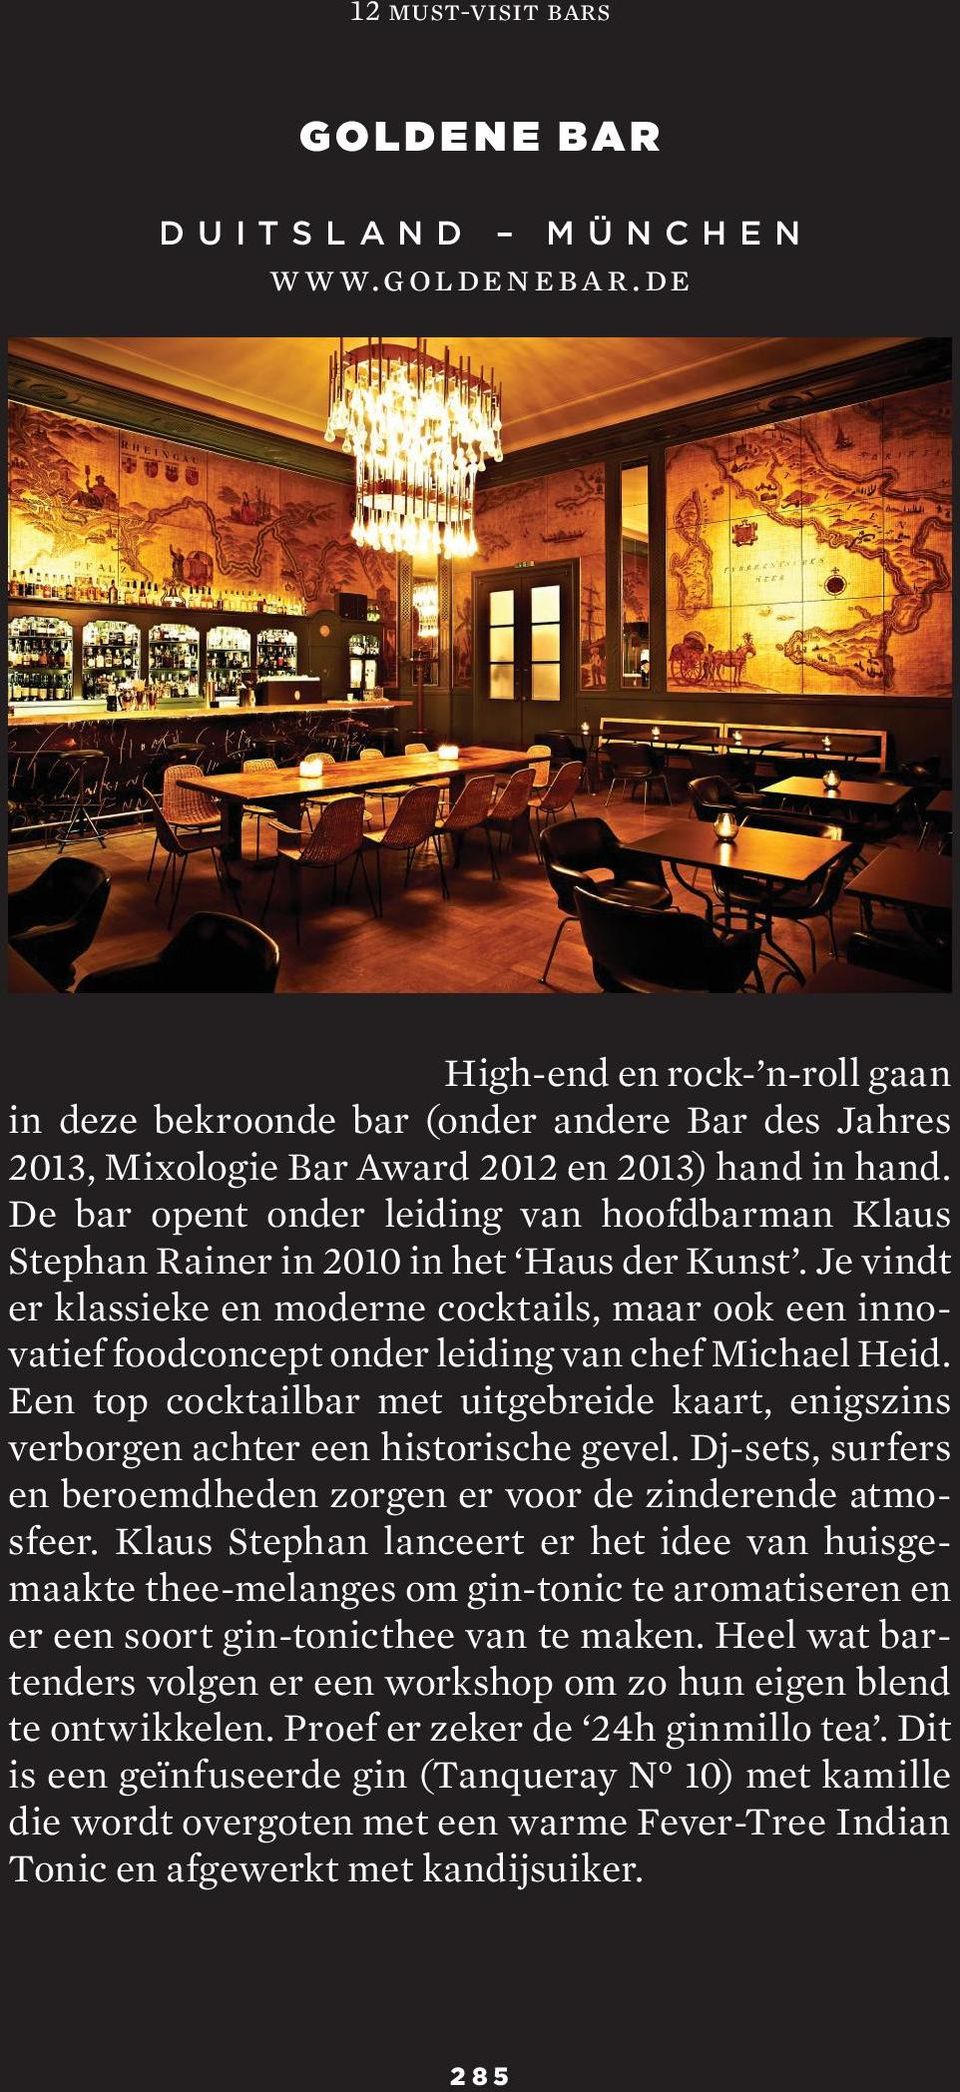 De bar opent onder leiding van hoofdbarman Klaus Stephan Rainer in 2010 in het Haus der Kunst.